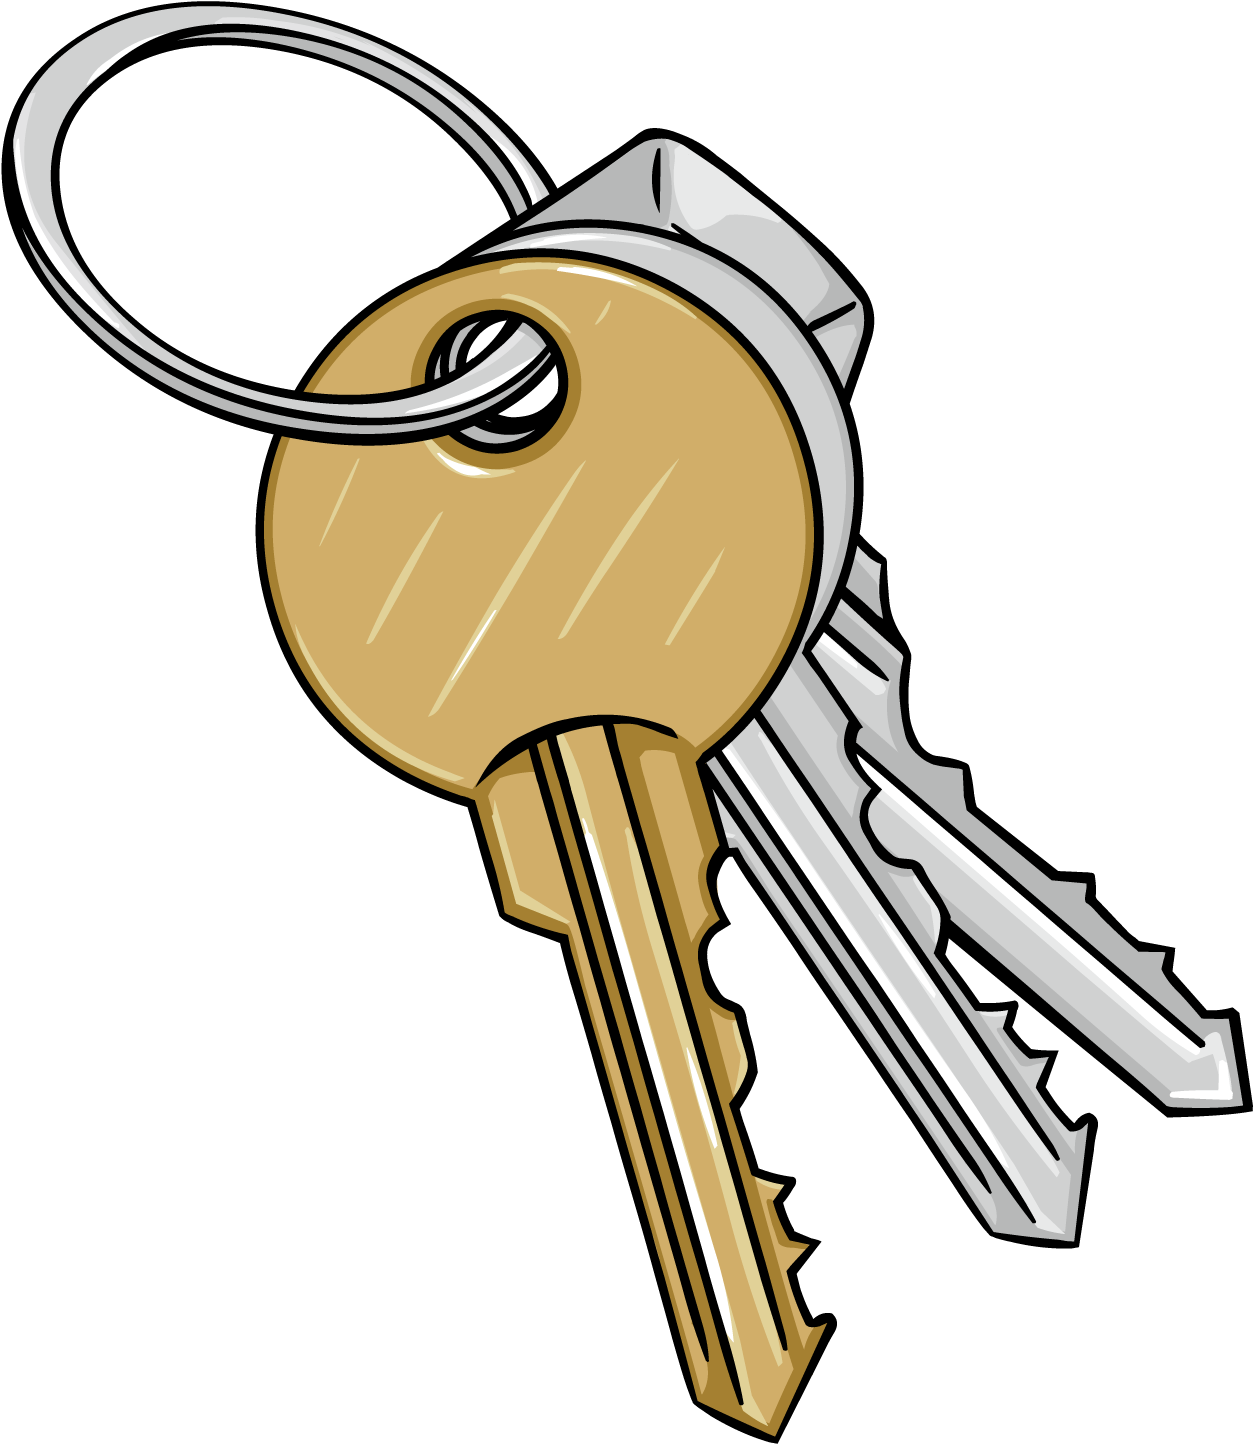 Ключи без смс. Ключ нарисованный. Ребенок со связкой ключей. Изображение ключа. Ключ на прозрачном фоне.